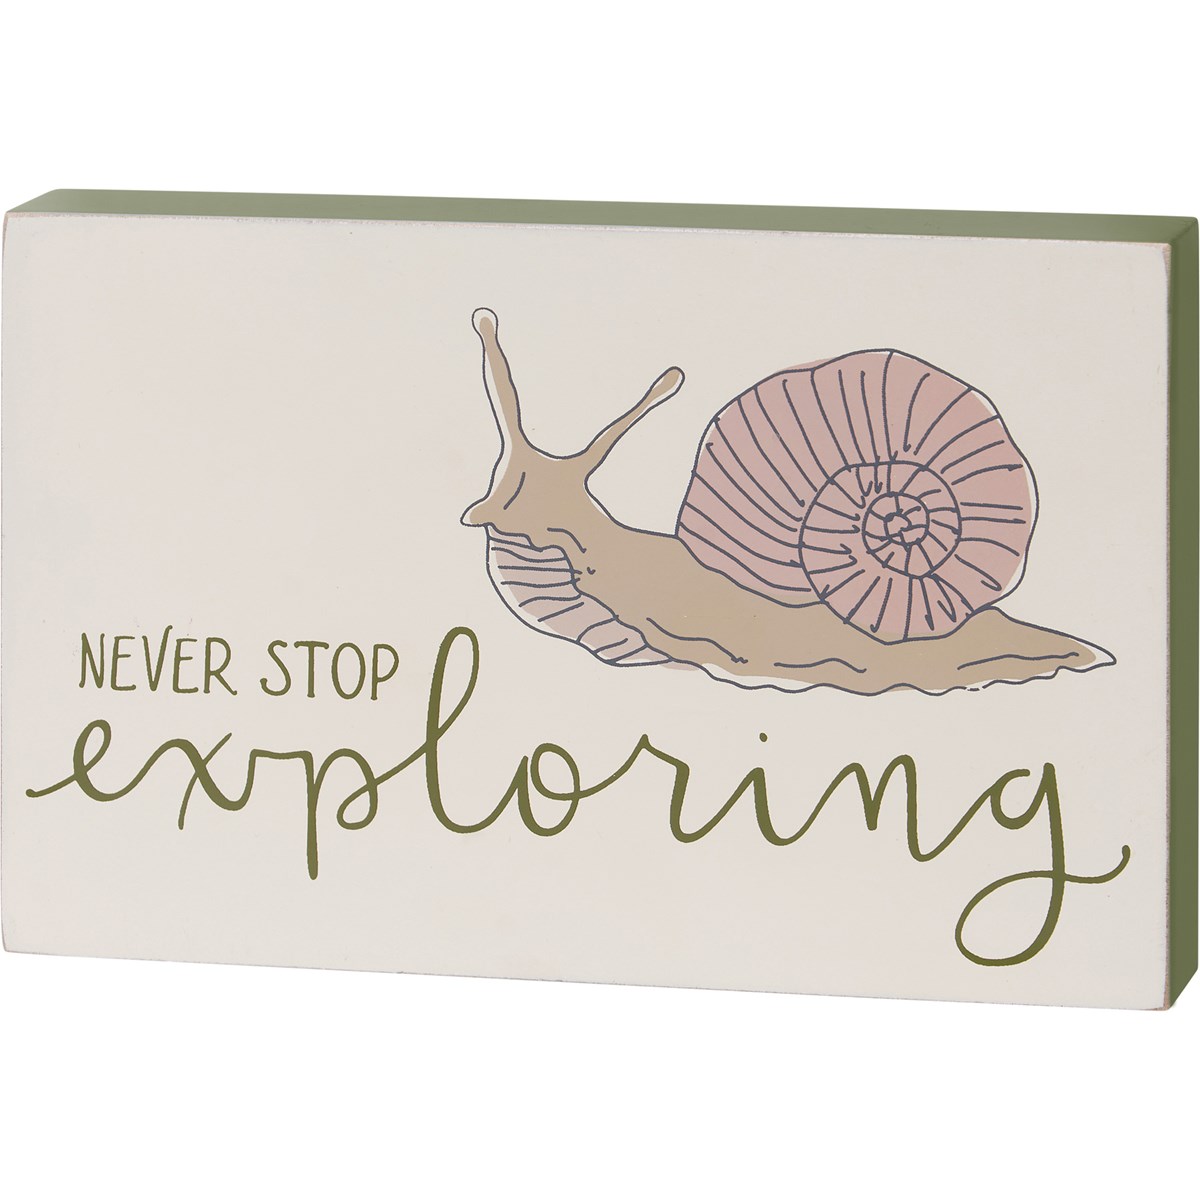 Never Stop Exploring Snail Block Sign - Wood